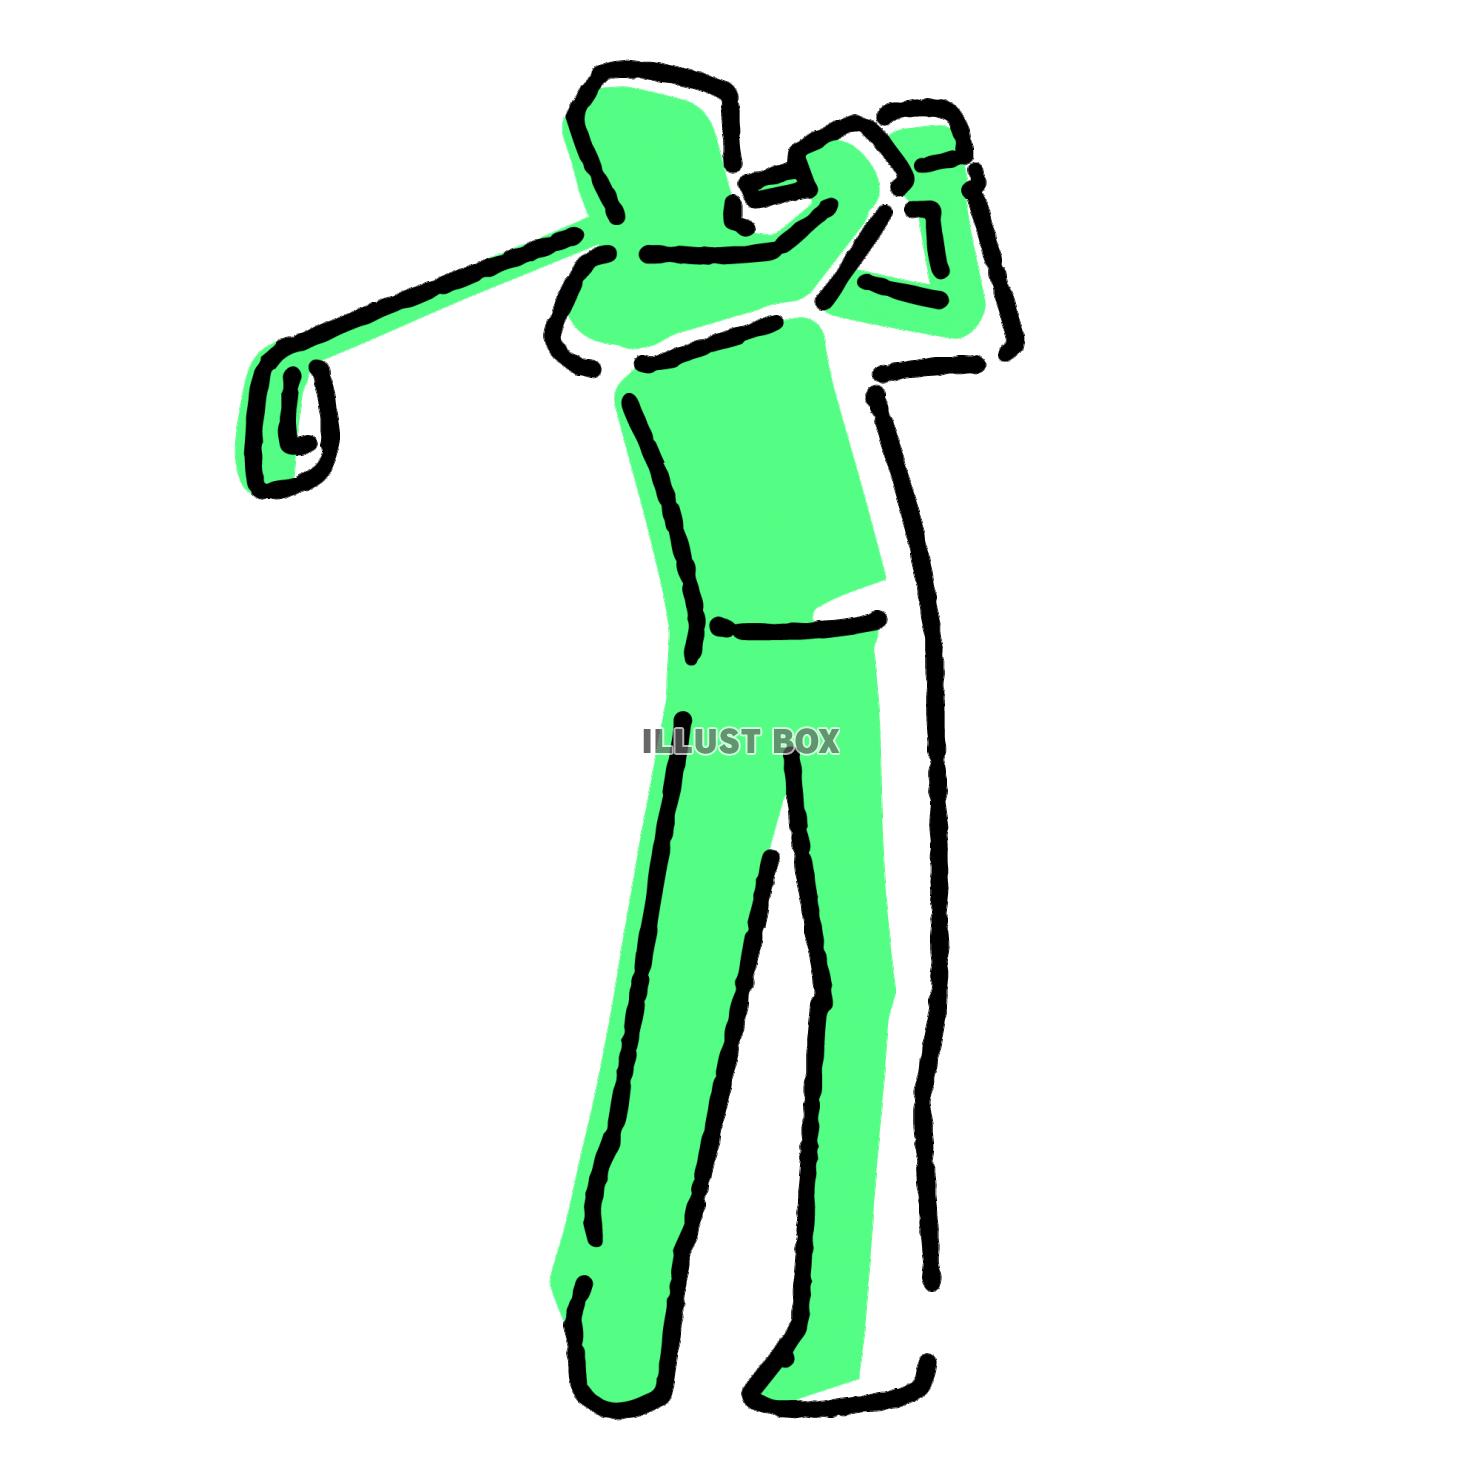 ゴルフをする人物のイラスト素材